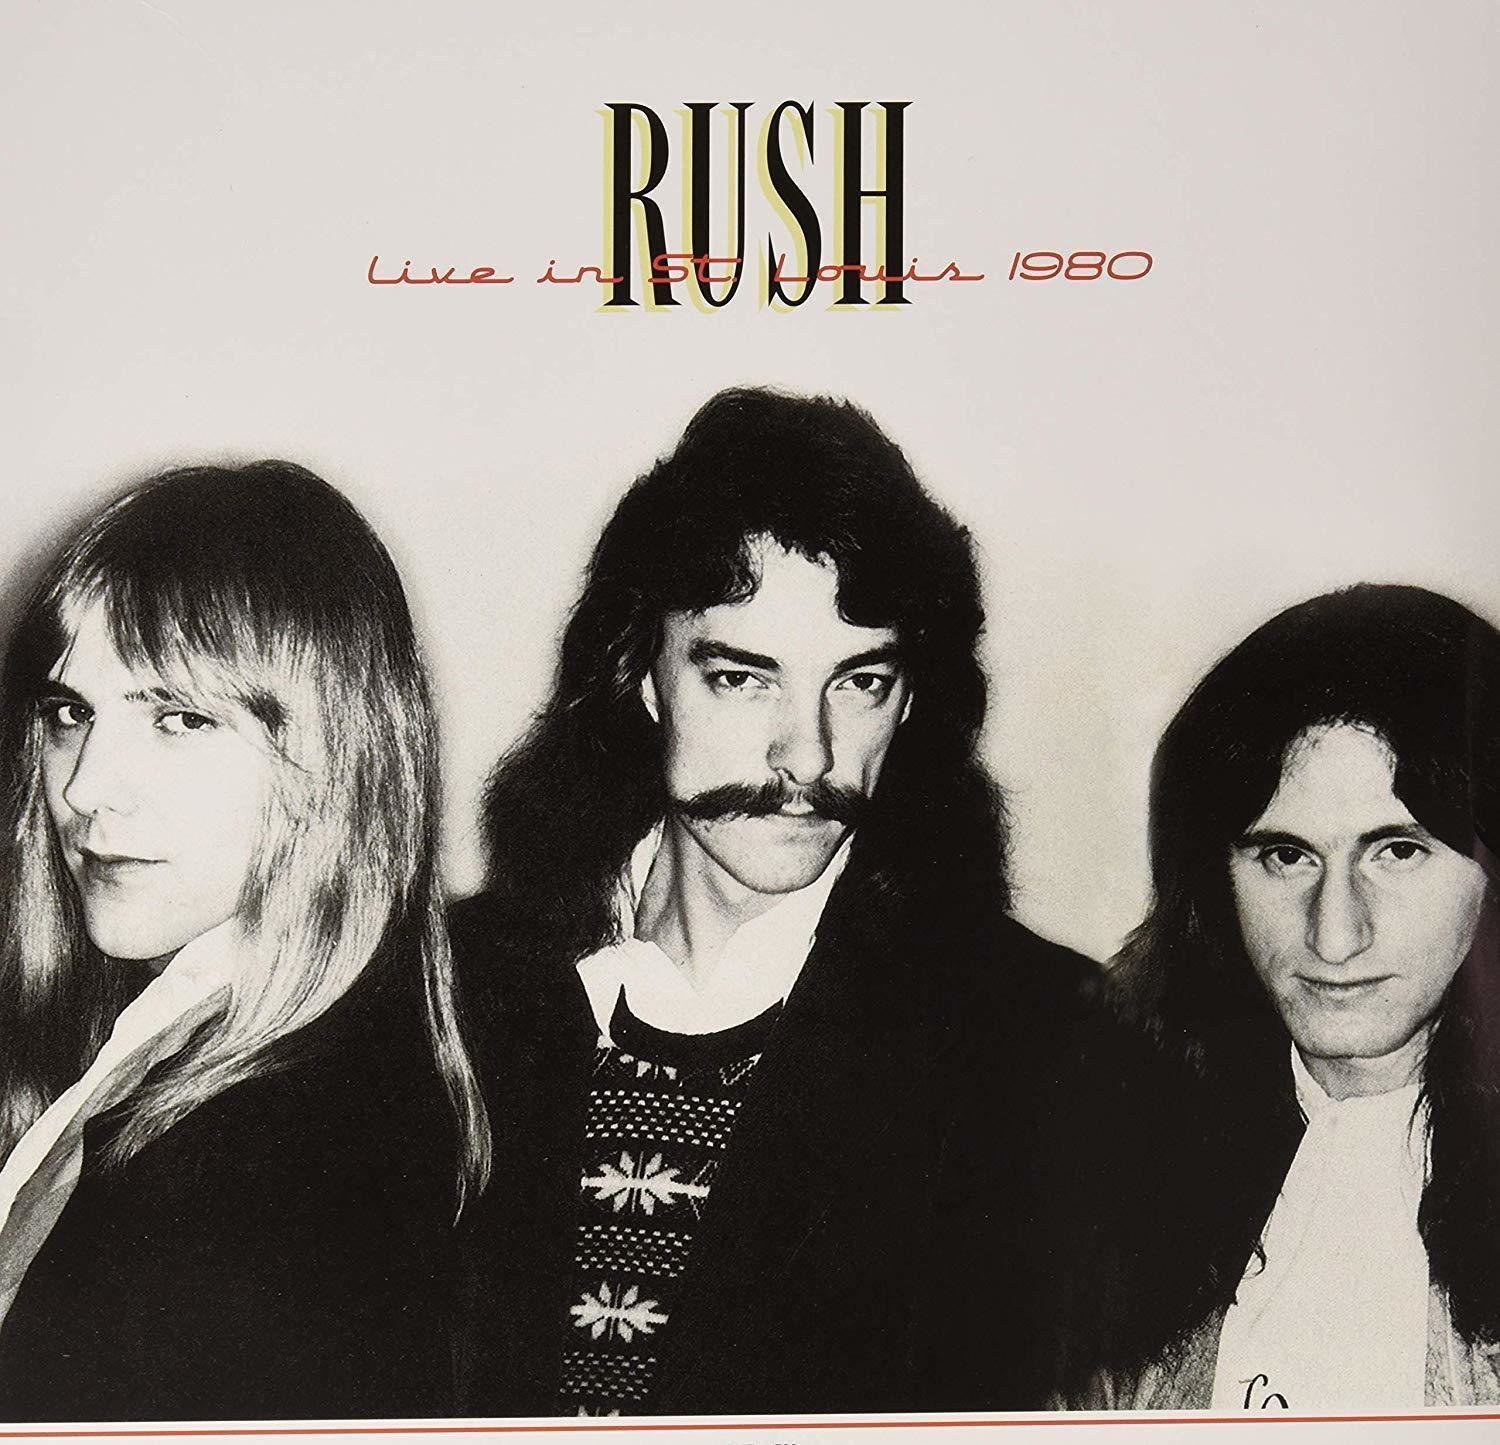 Disco in vinile Rush - Live In St. Louis 1980 (2 LP)